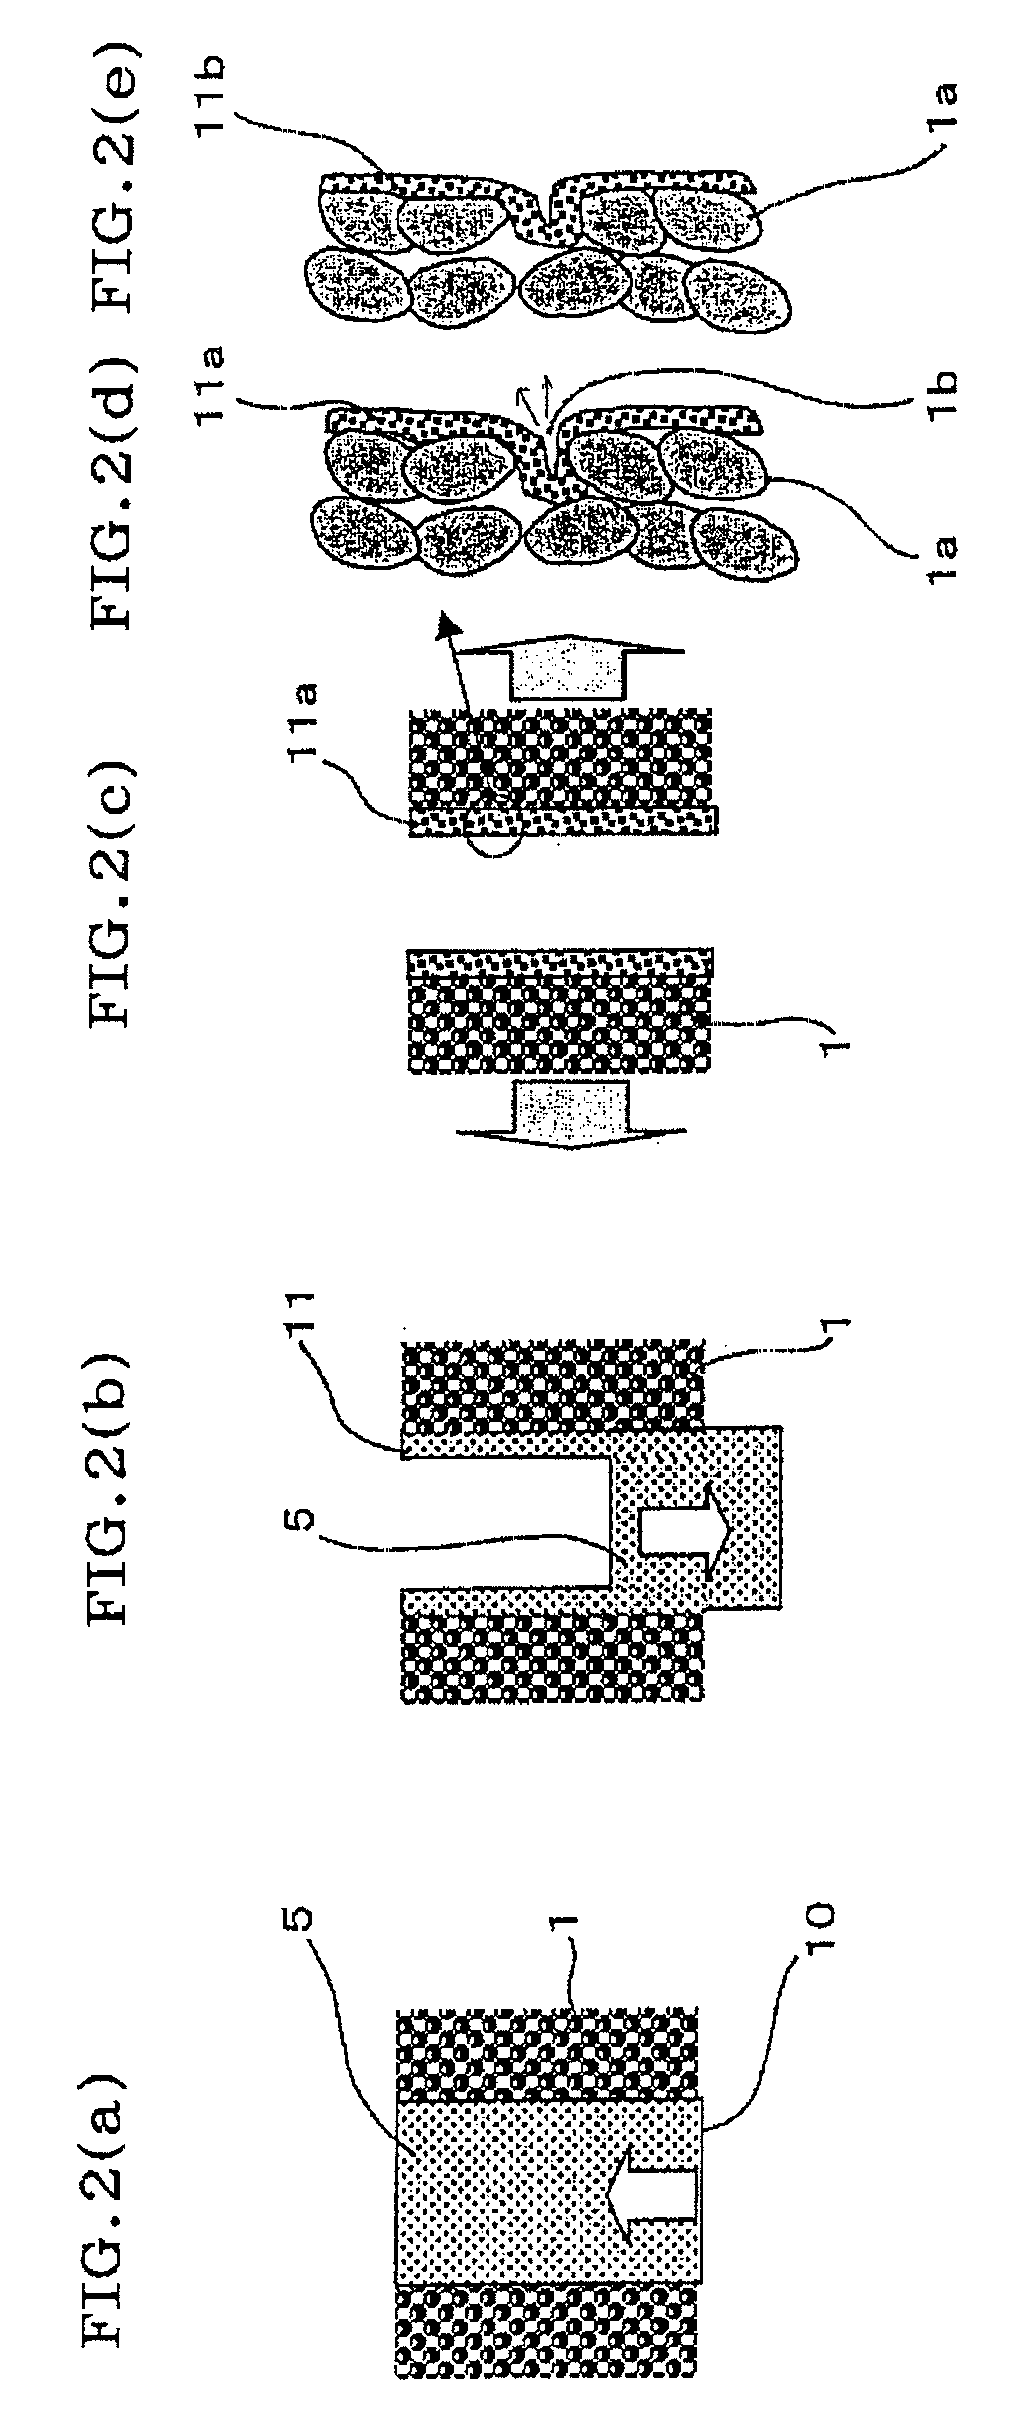 Method of manufacturing ceramic porous membrane